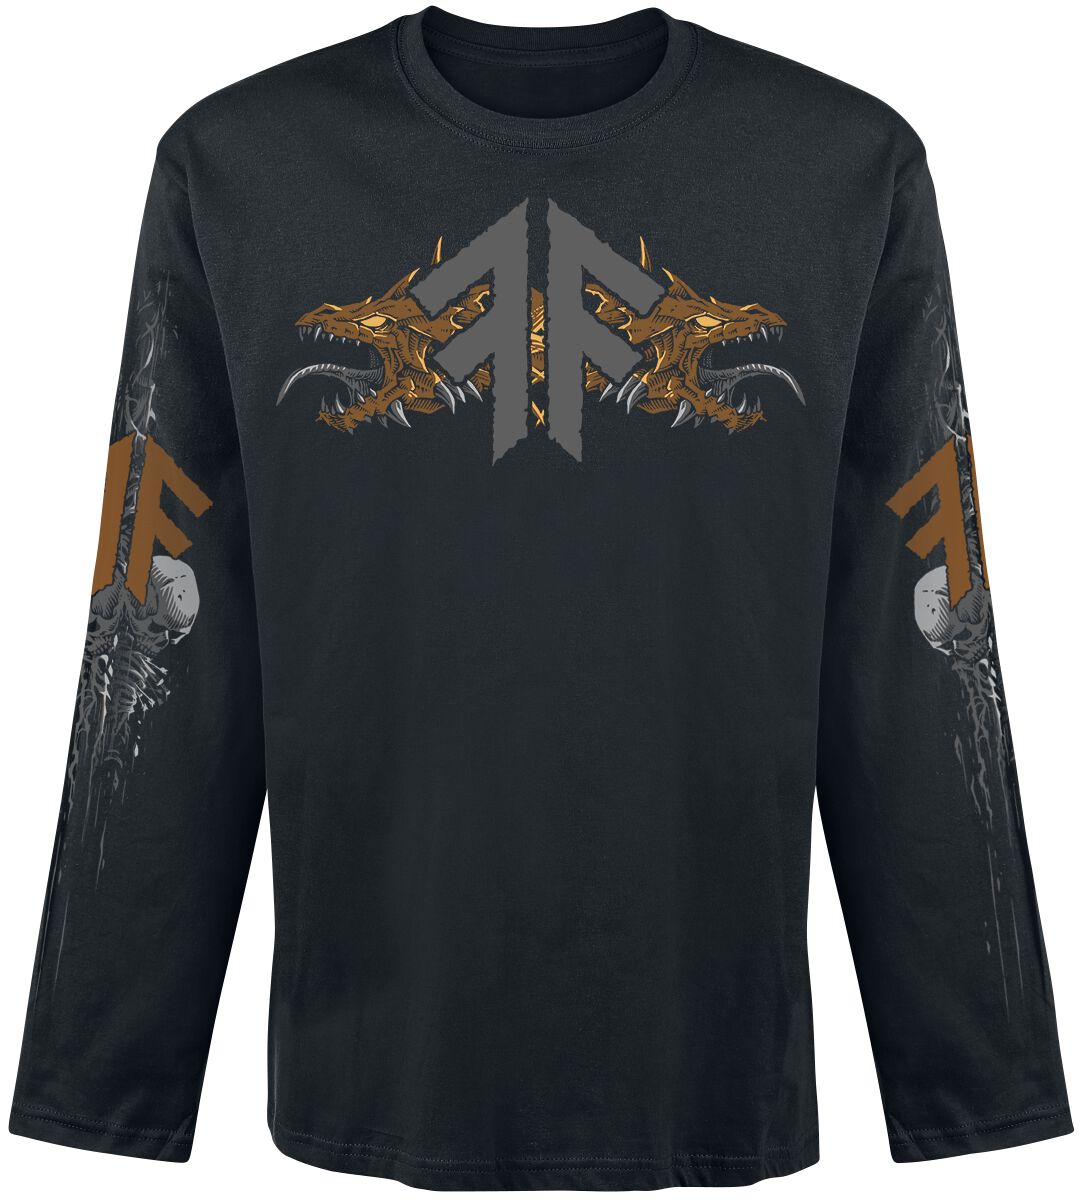 Amon Amarth Langarmshirt - Fafner`s Gold - S - für Männer - Größe S - schwarz  - Lizenziertes Merchandise!